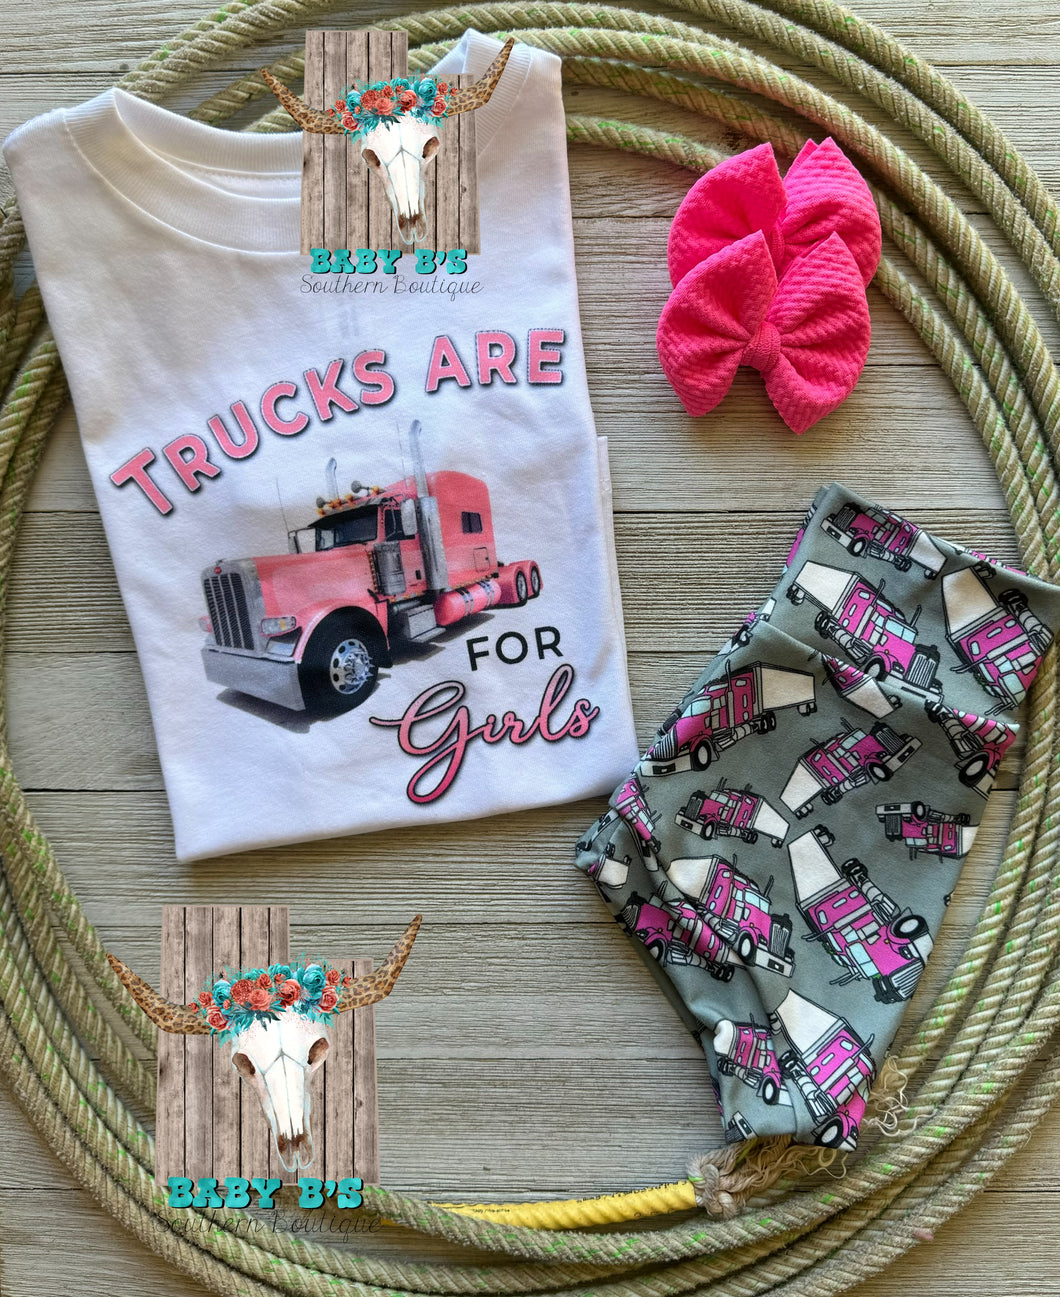 Trucks Are For Girls T-Shirt